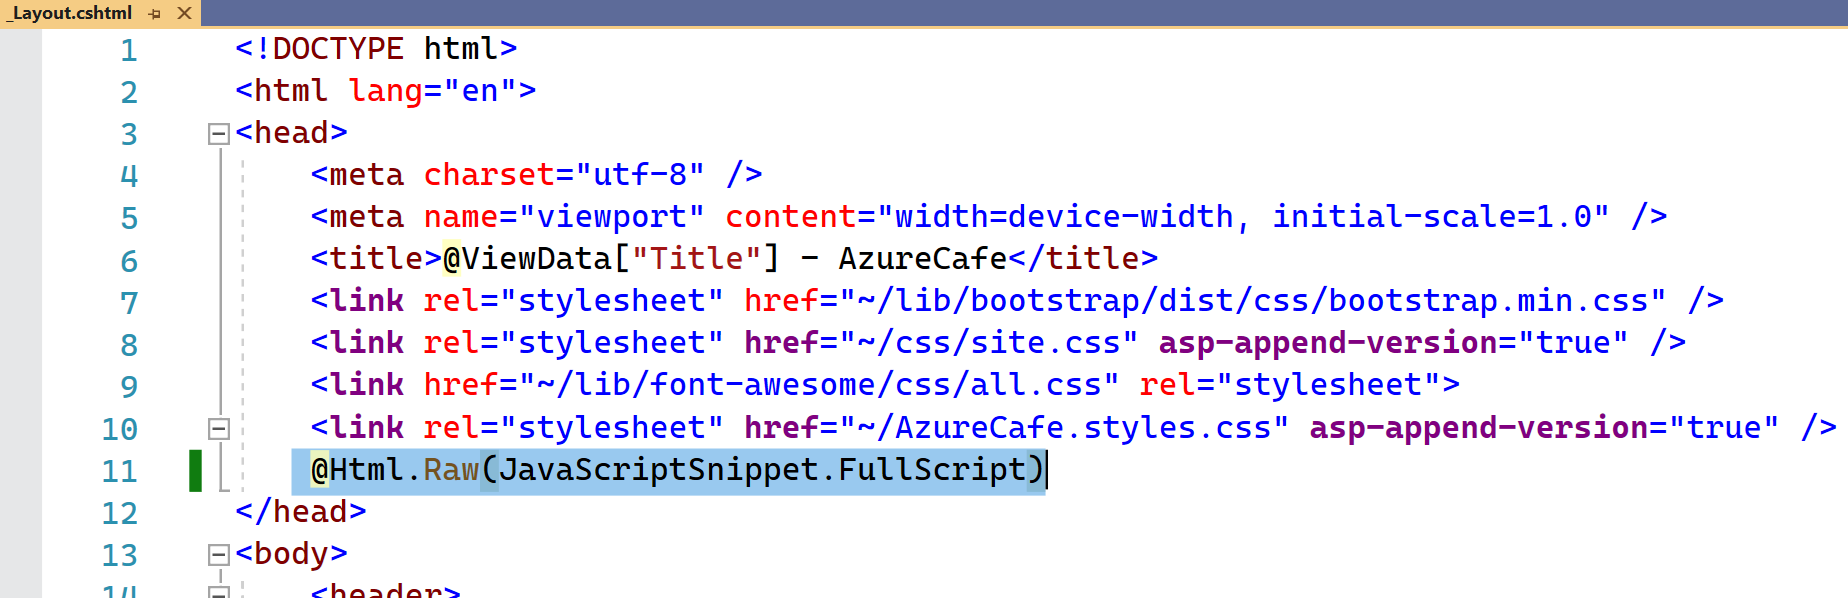 顯示 _Layout.cshtml 檔案，並在頁面的 head 區段內醒目提示了上述程式碼行。